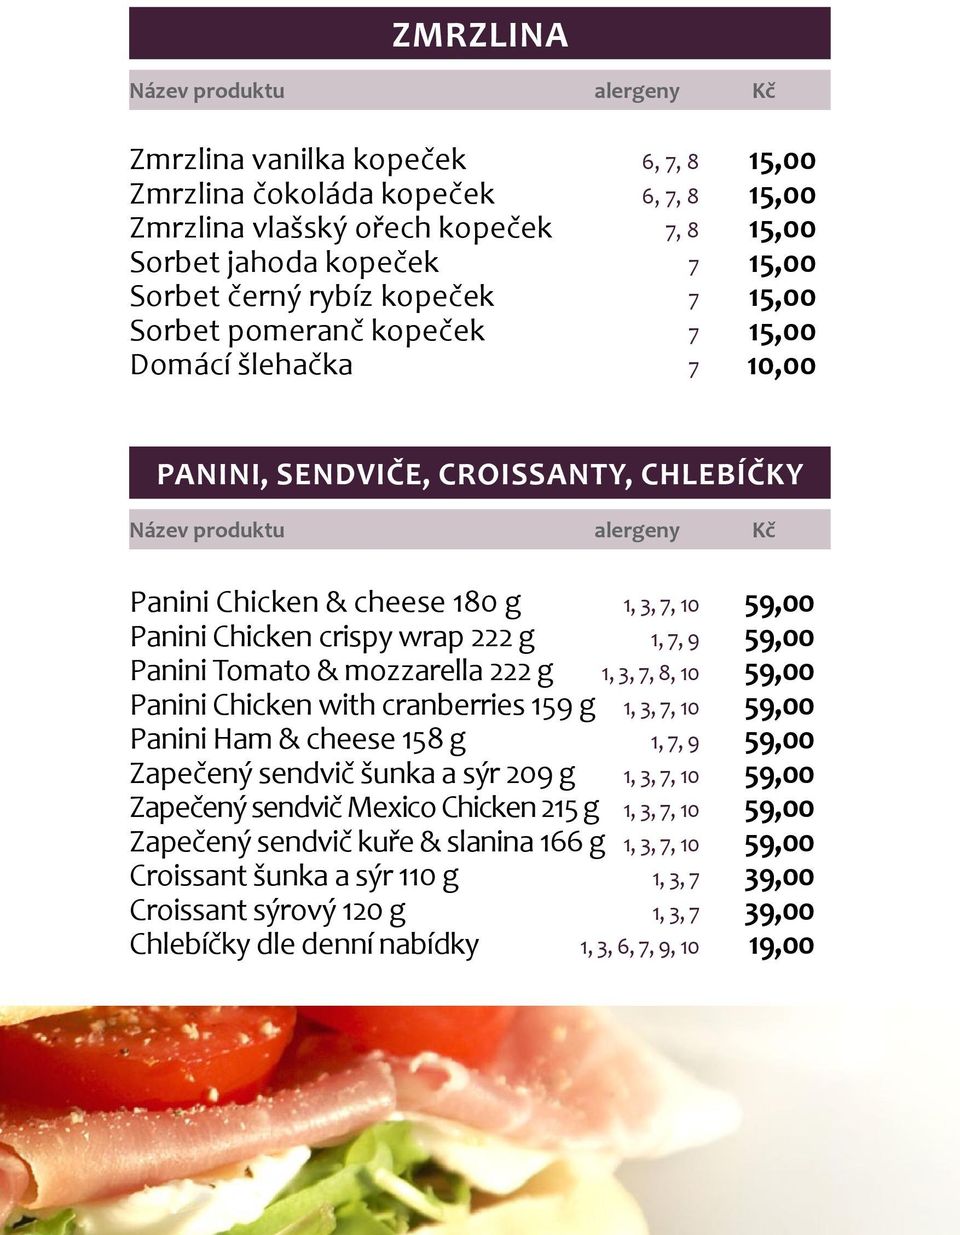 Tomato & mozzarella 222 g 1, 3, 7, 8, 10 59,00 Panini Chicken with cranberries 159 g 1, 3, 7, 10 59,00 Panini Ham & cheese 158 g 1, 7, 9 59,00 Zapečený sendvič šunka a sýr 209 g 1, 3, 7, 10 59,00